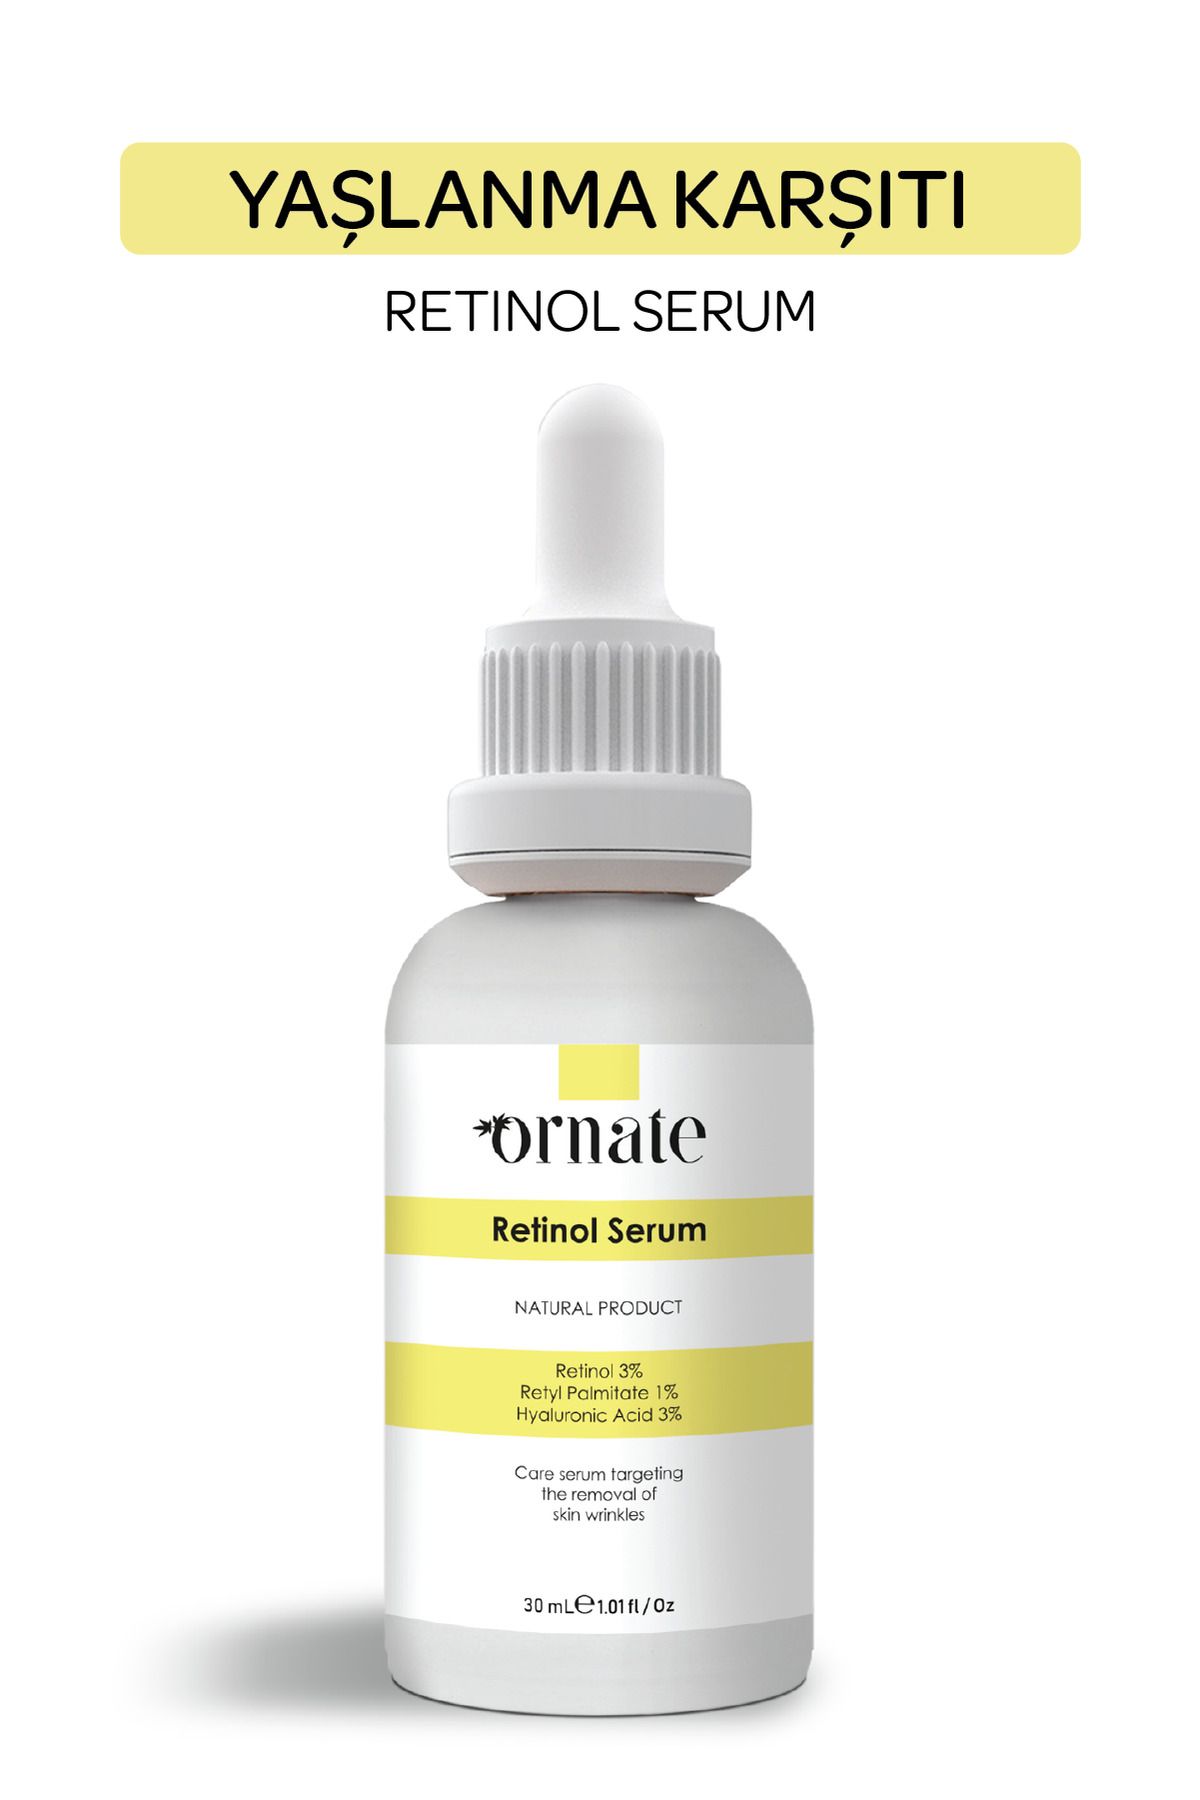 ORNATE Kırışıklık Ve Yaşlılık Karşıtı Retinol Serum Hyaluronic Acid %3 + Retinol %3 + Allantoin %2